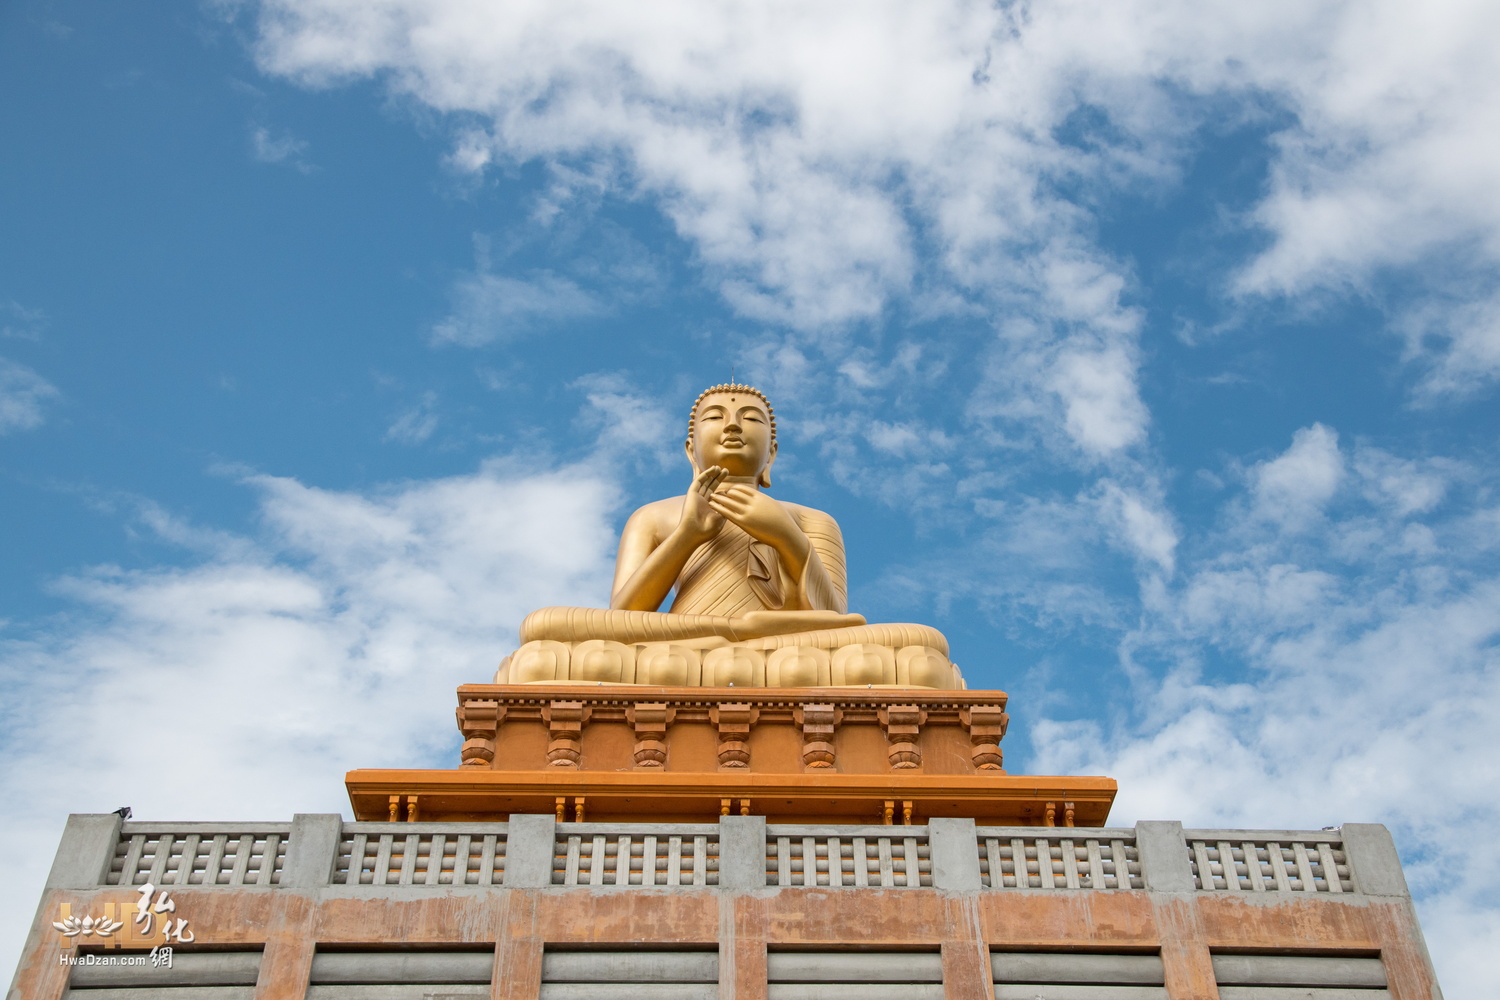 斯里蘭卡龍喜國際佛教大學落成啟用典禮 (47)